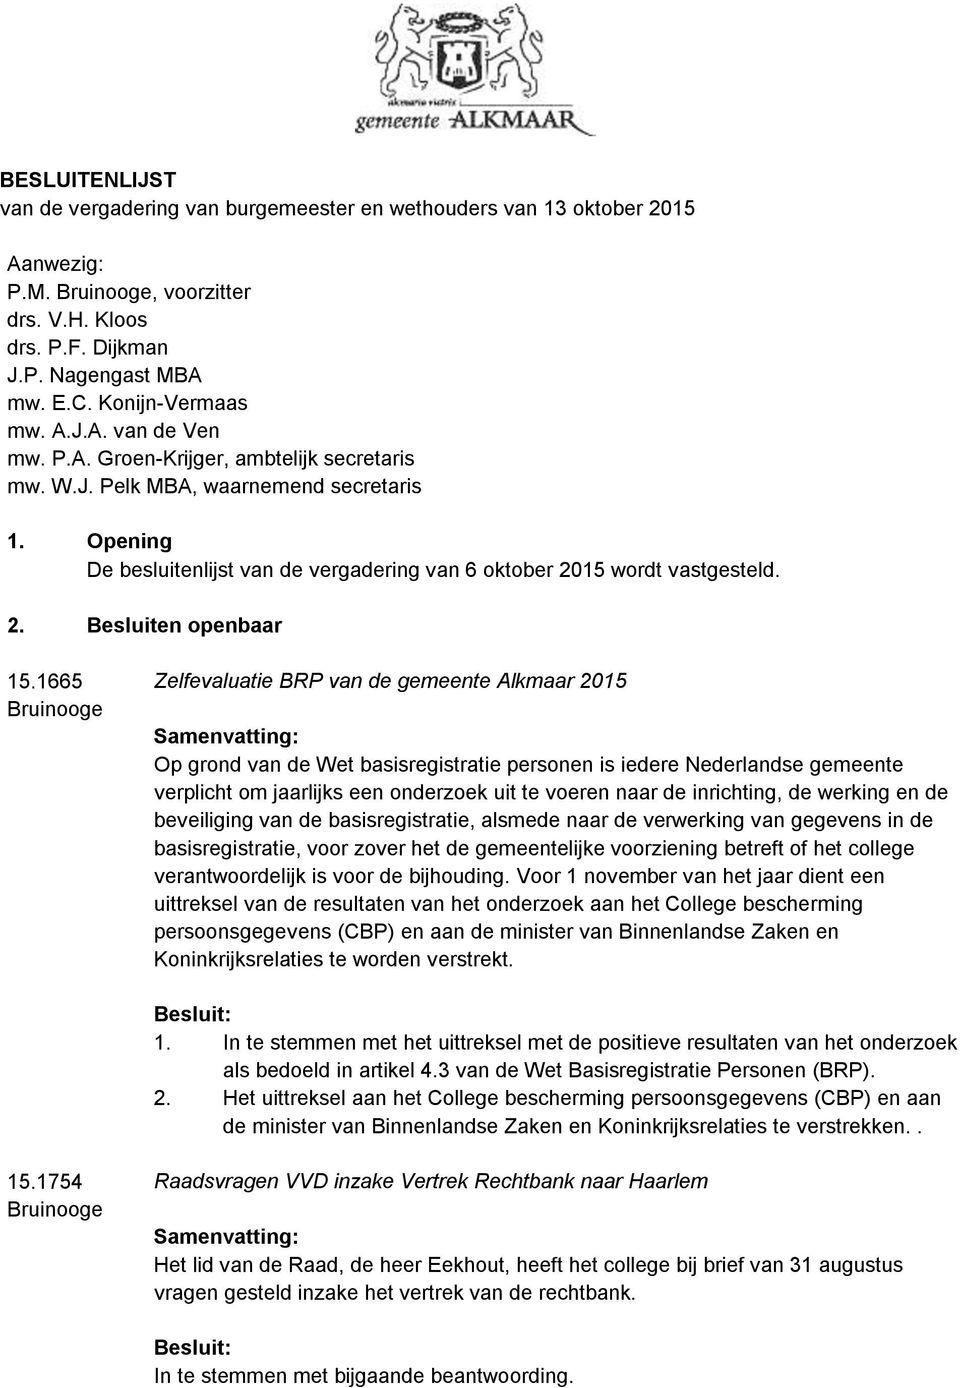 1665 Bruinooge Zelfevaluatie BRP van de gemeente Alkmaar 2015 Op grond van de Wet basisregistratie personen is iedere Nederlandse gemeente verplicht om jaarlijks een onderzoek uit te voeren naar de